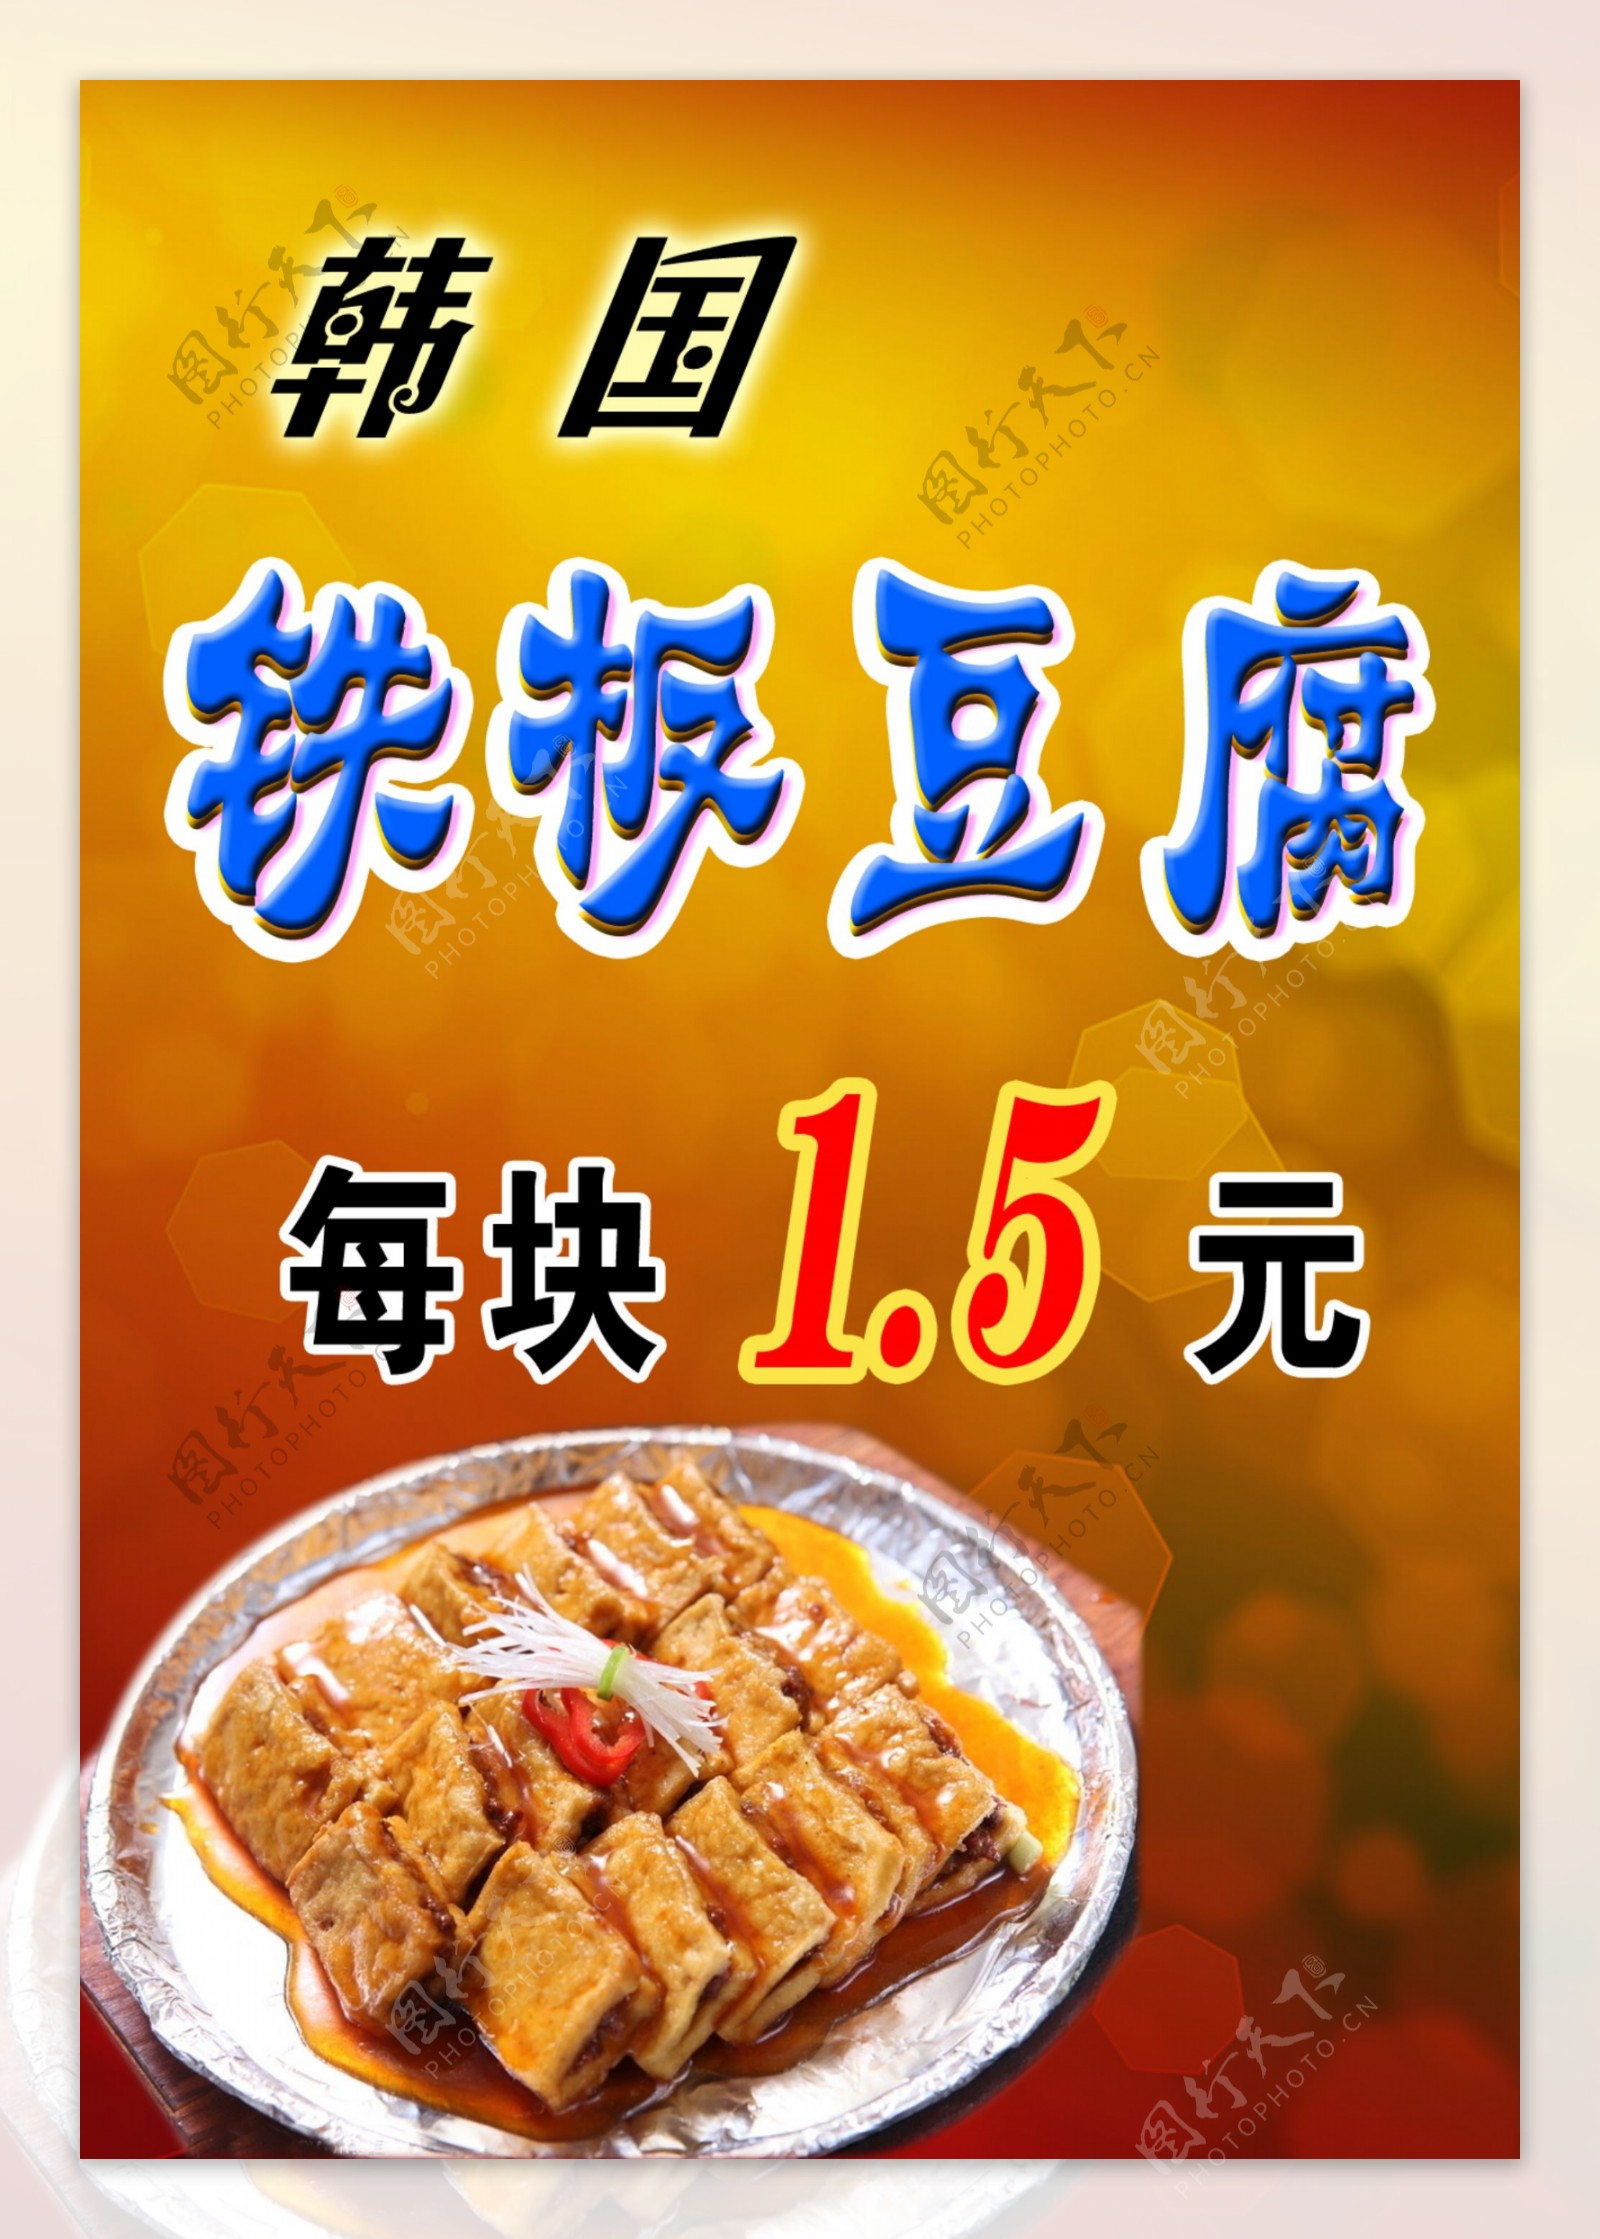 韩国铁板豆腐广告图片